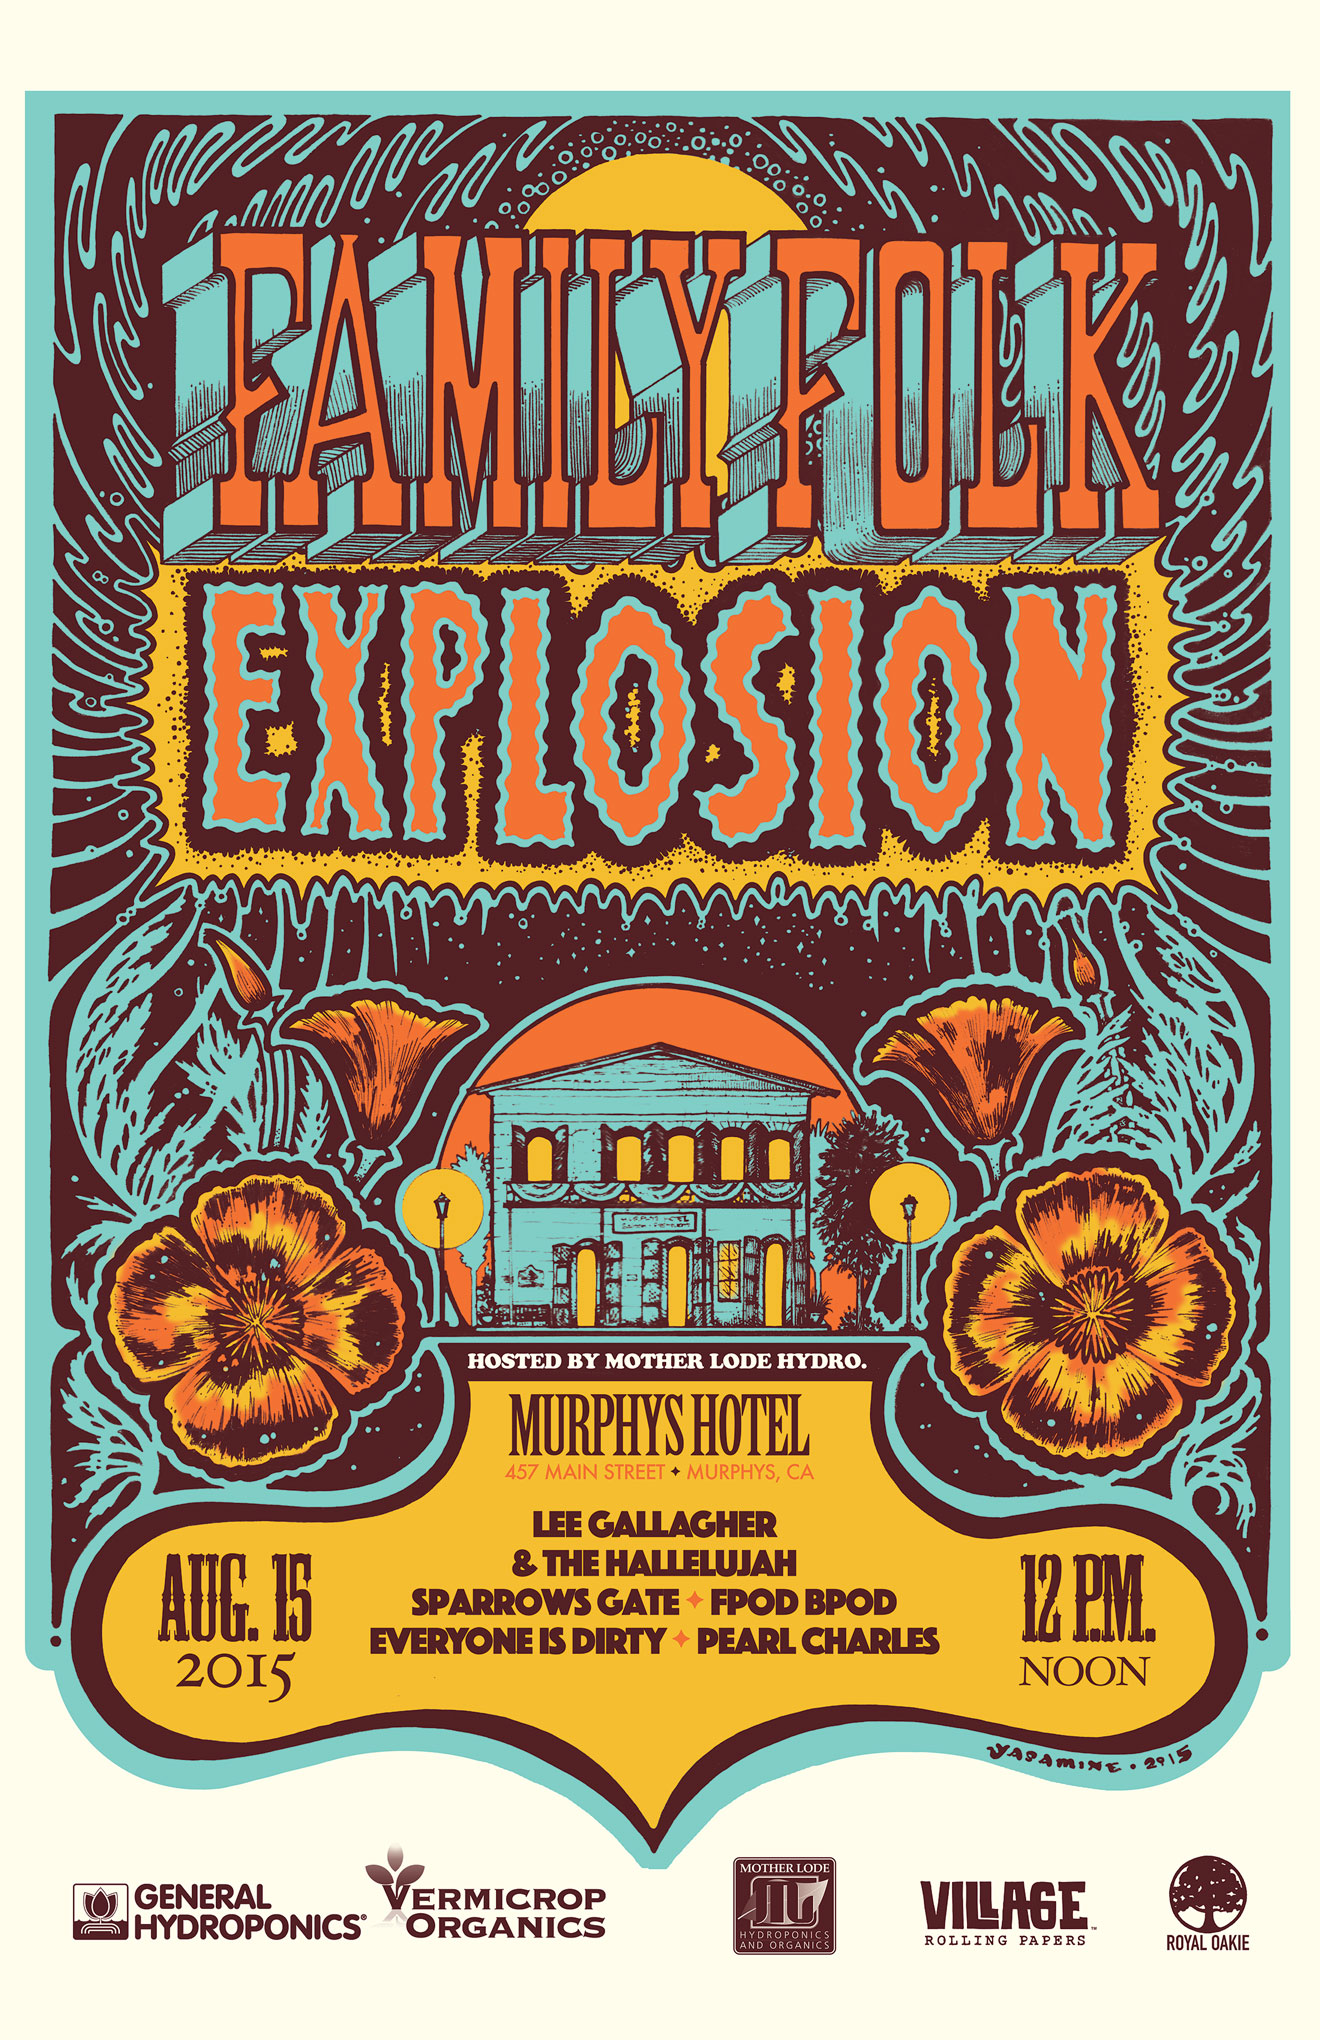   Festival Poster for Family Folk Explosion  